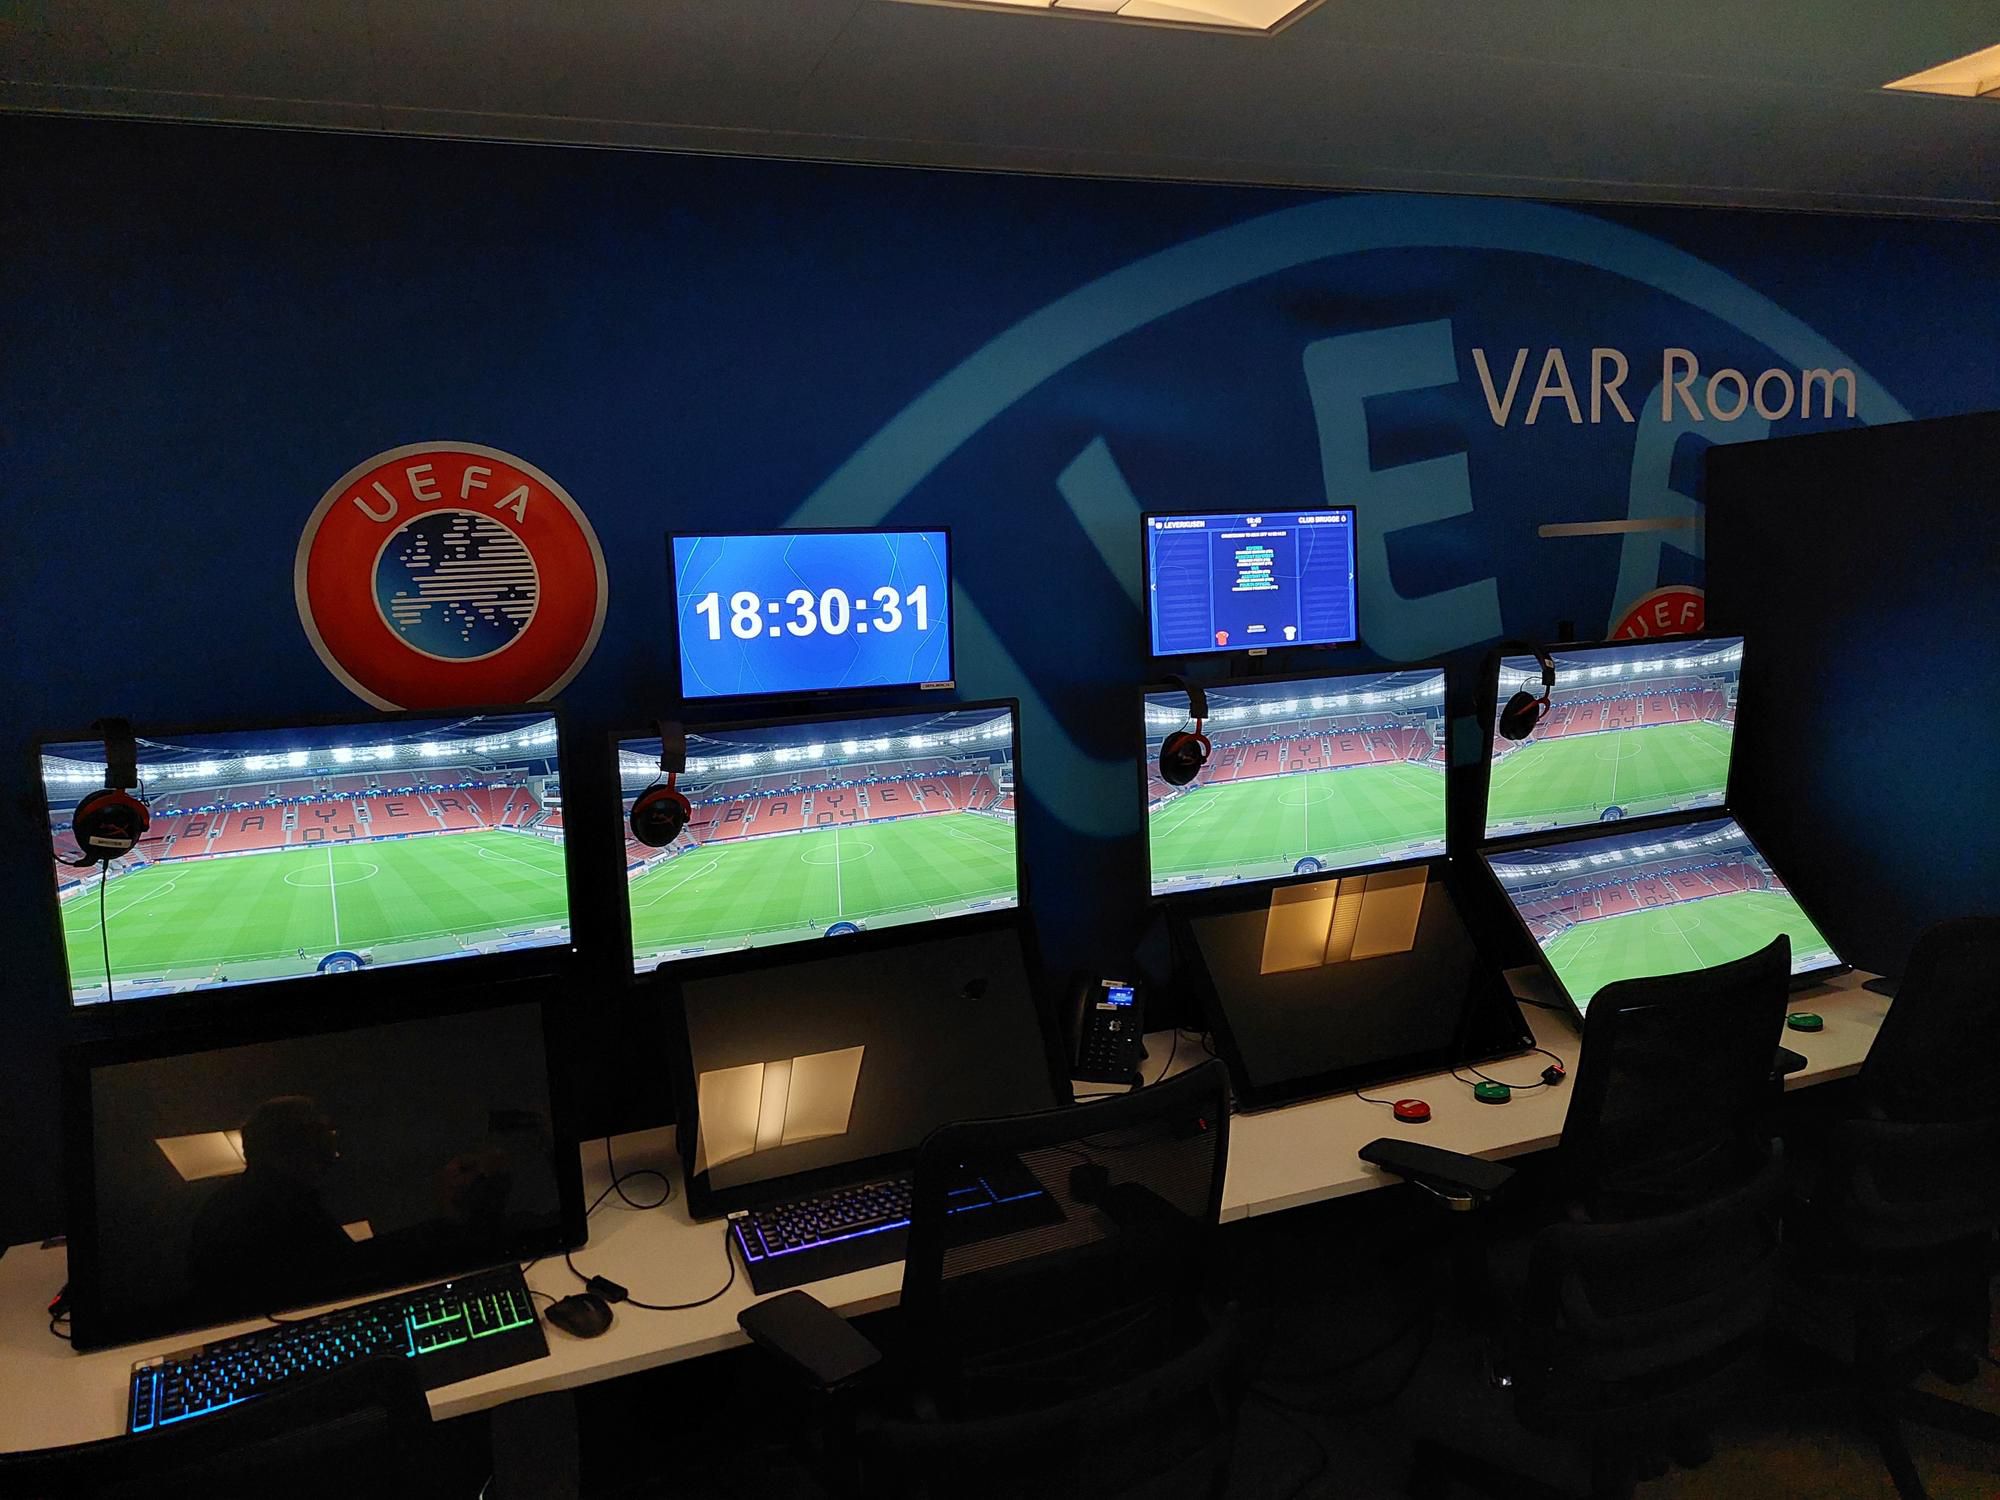 Boli sme v centrále UEFA vo švajčiarskom Nyone. Pozrite sa, ako to tam vyzerá